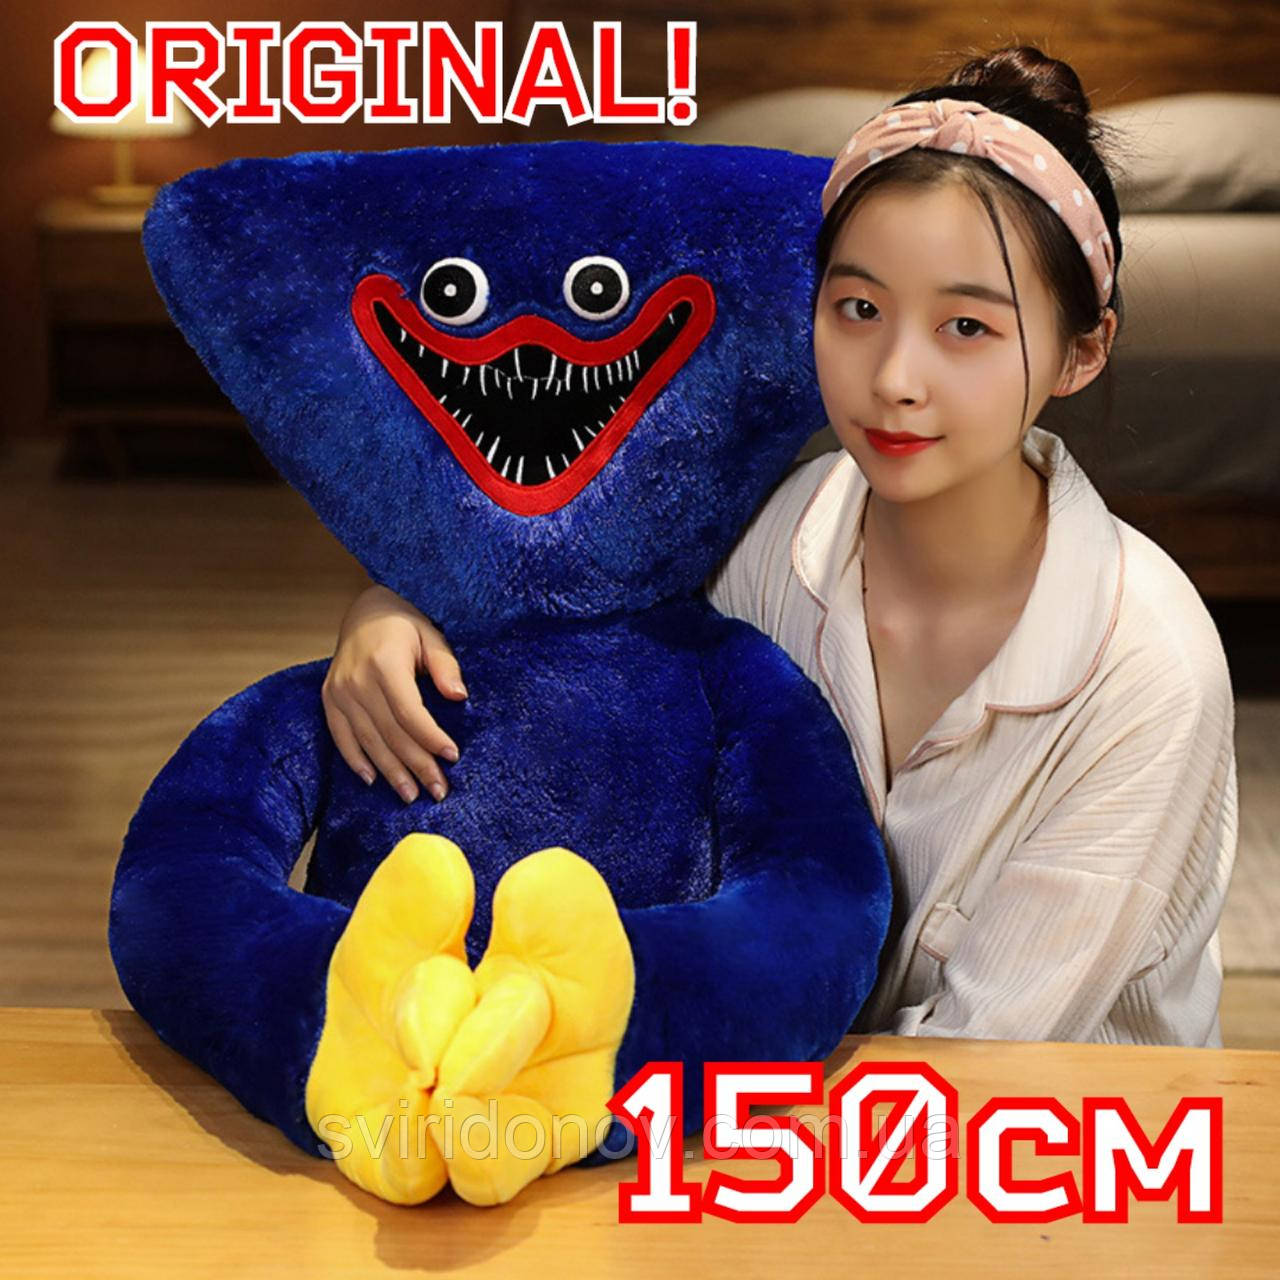 Великі М'які іграшки сині Величезна Хагі Вагі ВЕЛИКИЙ розмір Хаггі Вагі монстр синій іграшка м'яка 150 см